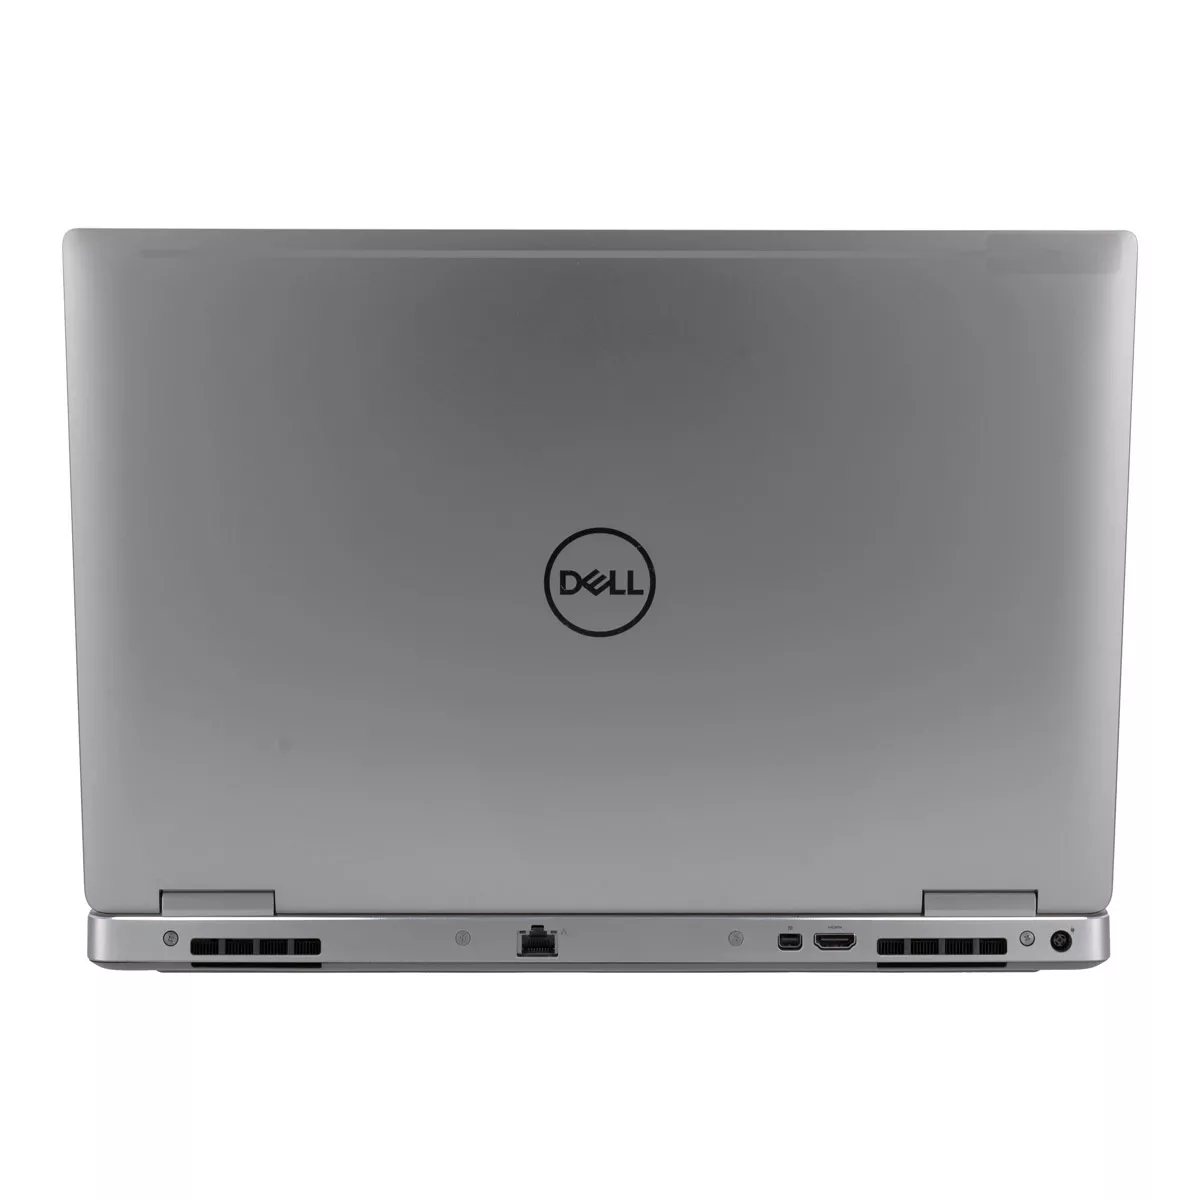 Dell Precision 7540 Core i7 9750H nVidia Quadro T1000M 32 GB 500 GB M.2 nVME SSD Webcam Silber A+